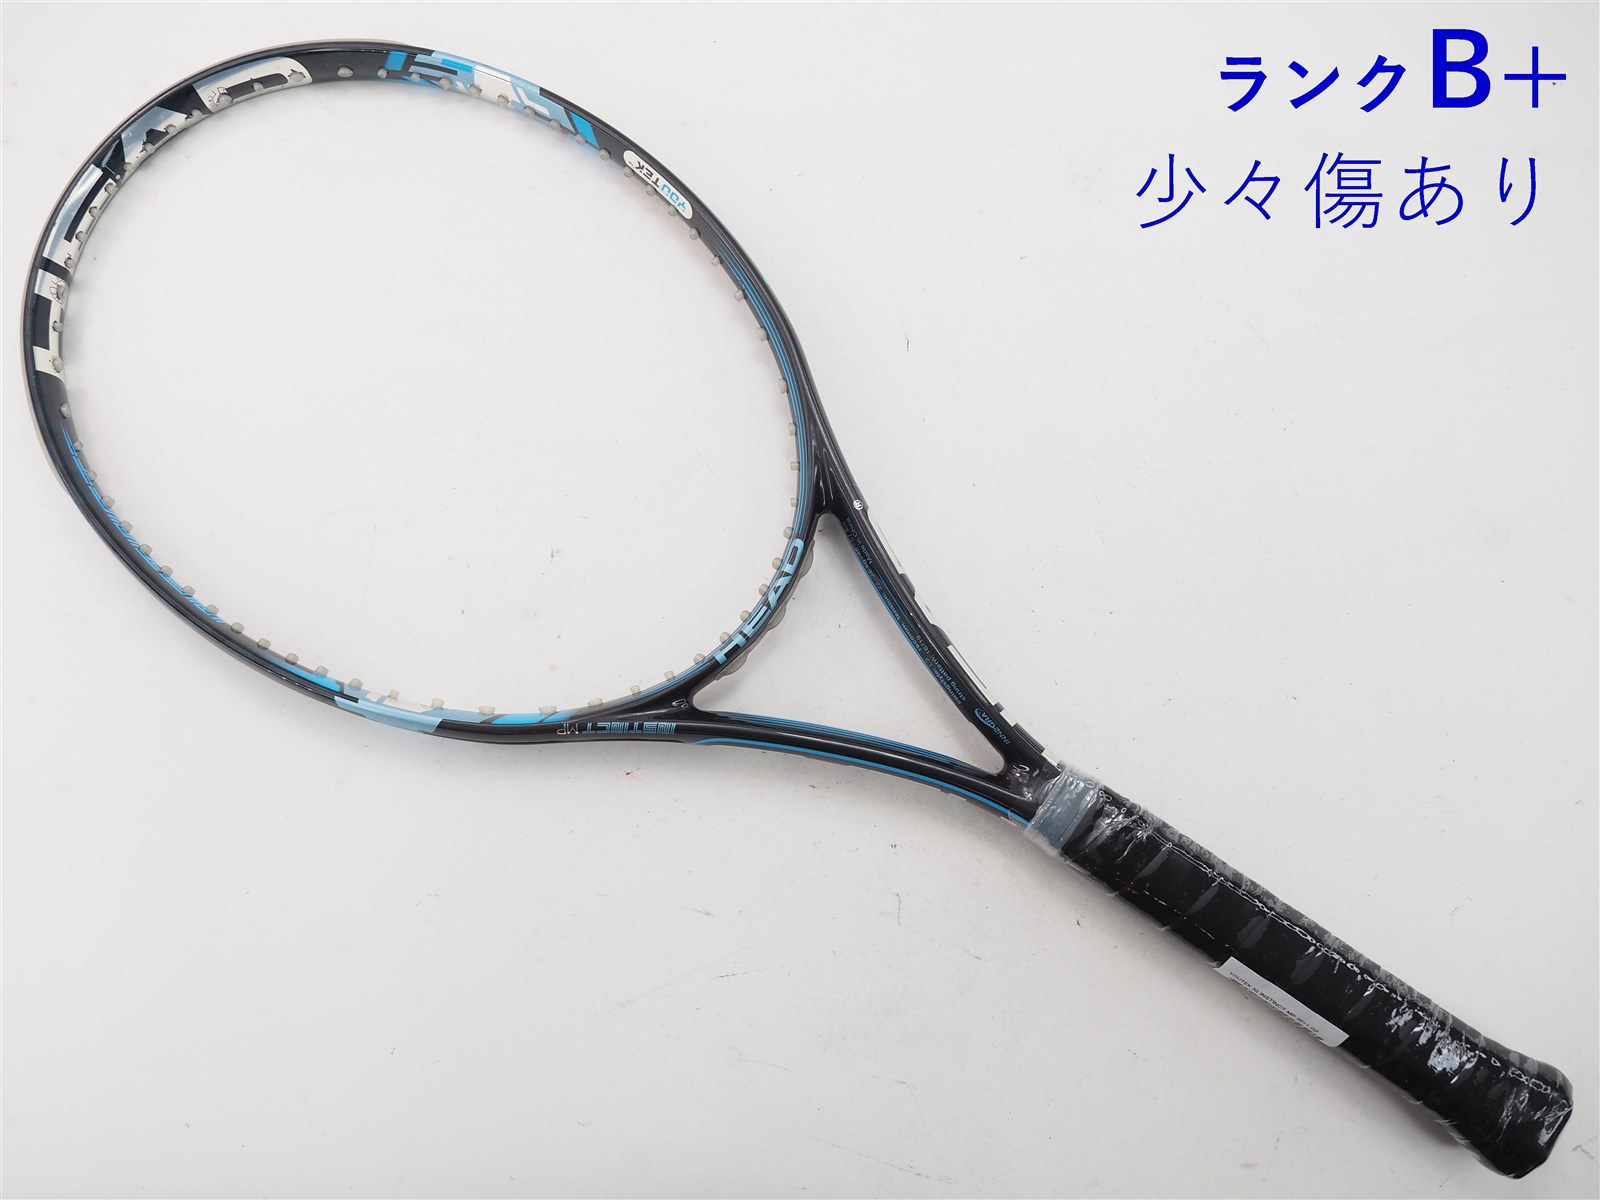 テニスラケット ヘッド ユーテック IG スピード MP 300 2011年モデル (G3)HEAD YOUTEK IG SPEED MP 300 2011